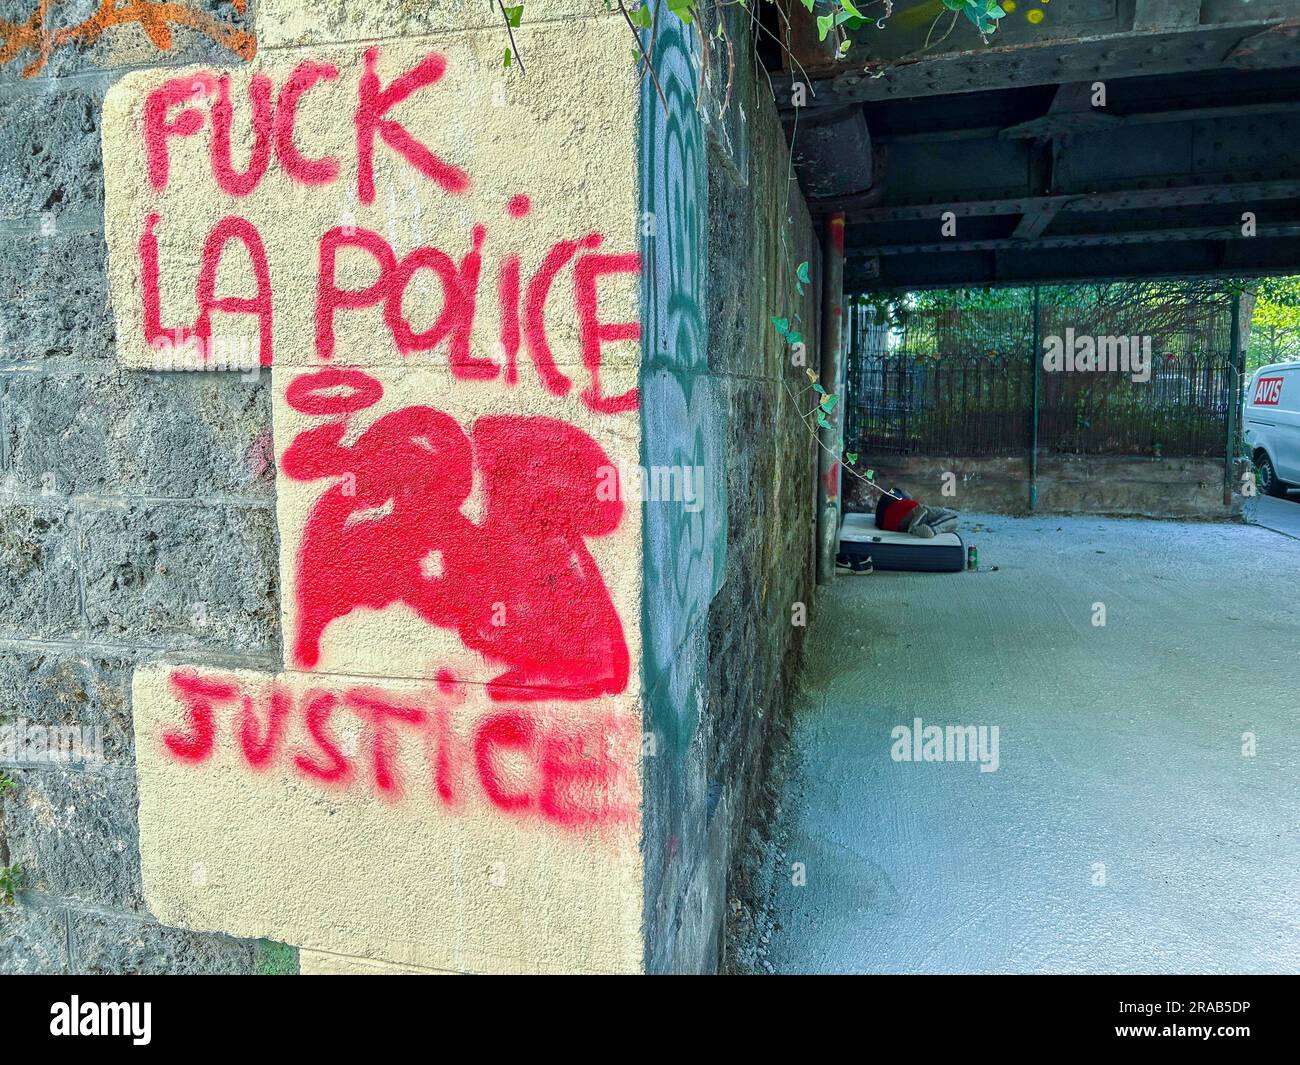 París, Francia, Violencia antipolicial Graffitti en Walll en el 12º distrito 'F CK La Policía' Foto de stock